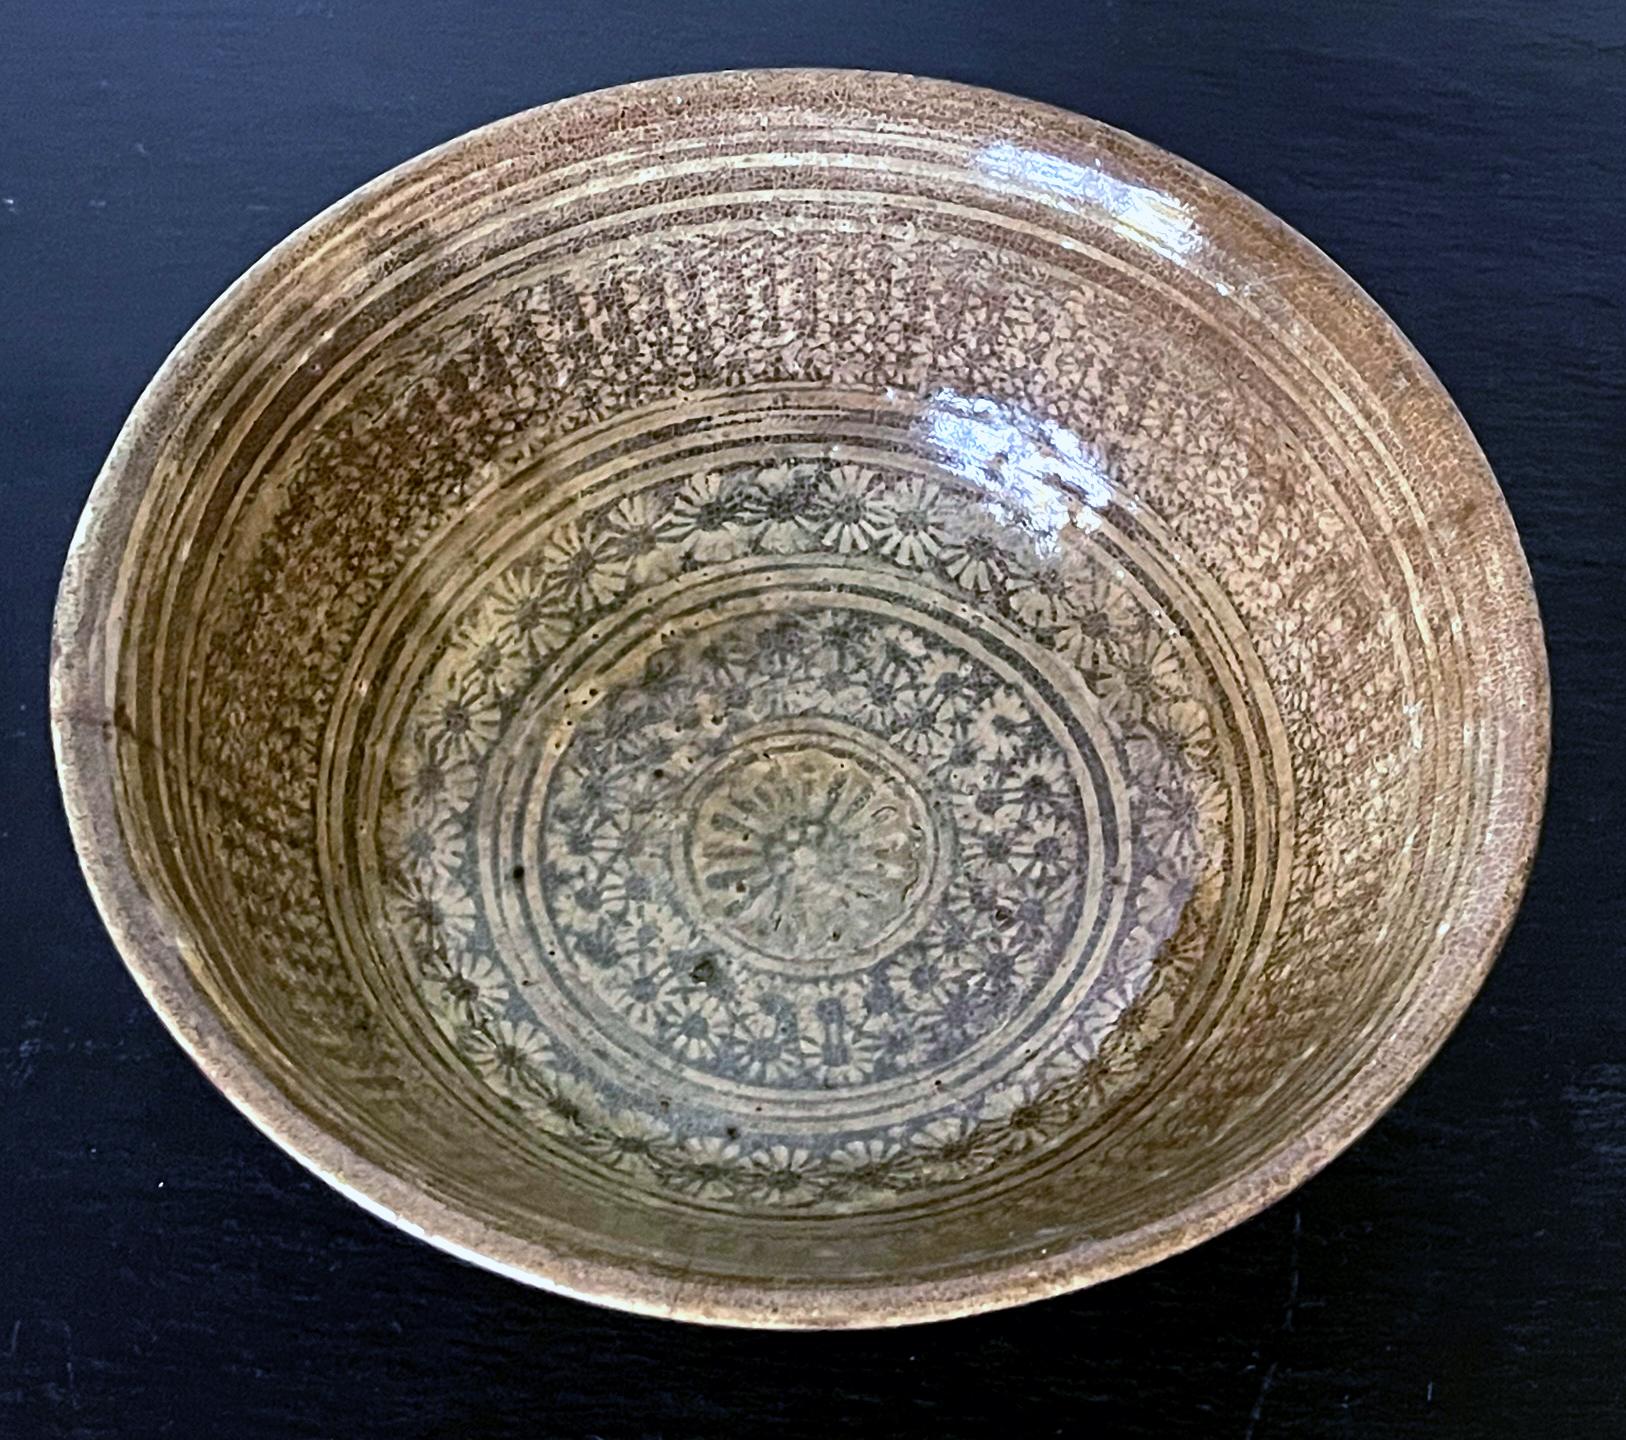 Eine koreanische Keramikschale auf einem kurzen Ringfuß im klassischen Buncheong- (oder Punch'ong-) Stil aus der frühen Joseon-Dynastie um das 15. Die Schale weist eine schöne, dichte Komposition aus weißem Schlickerdekor in Prägetechnik auf. Mit